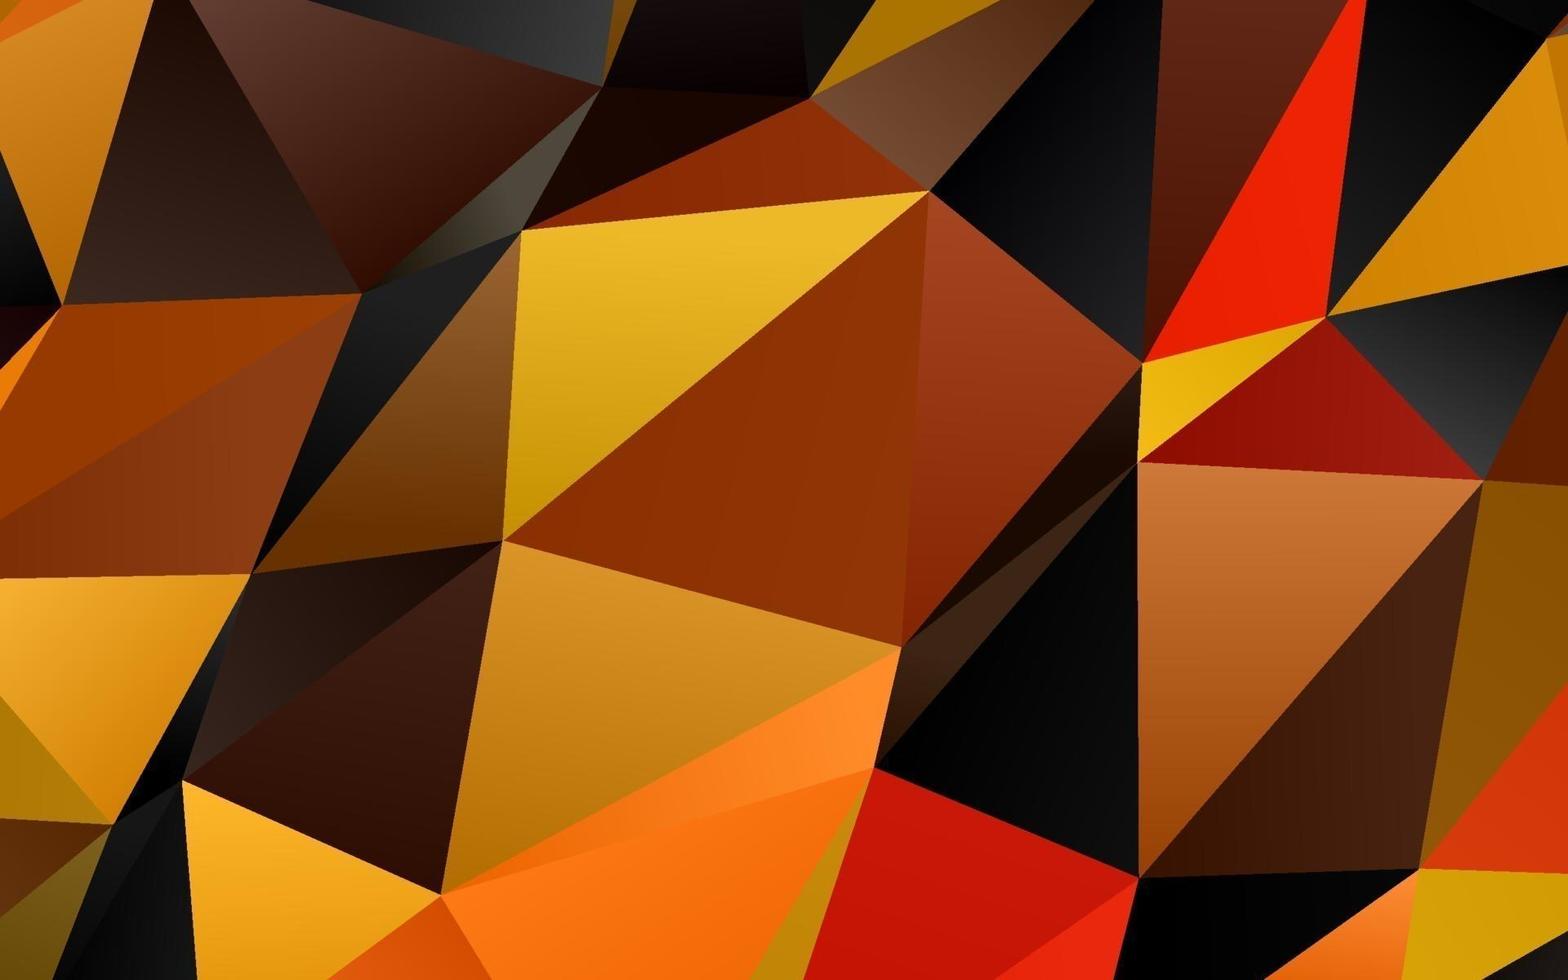 texture triangle floue vecteur orange clair.